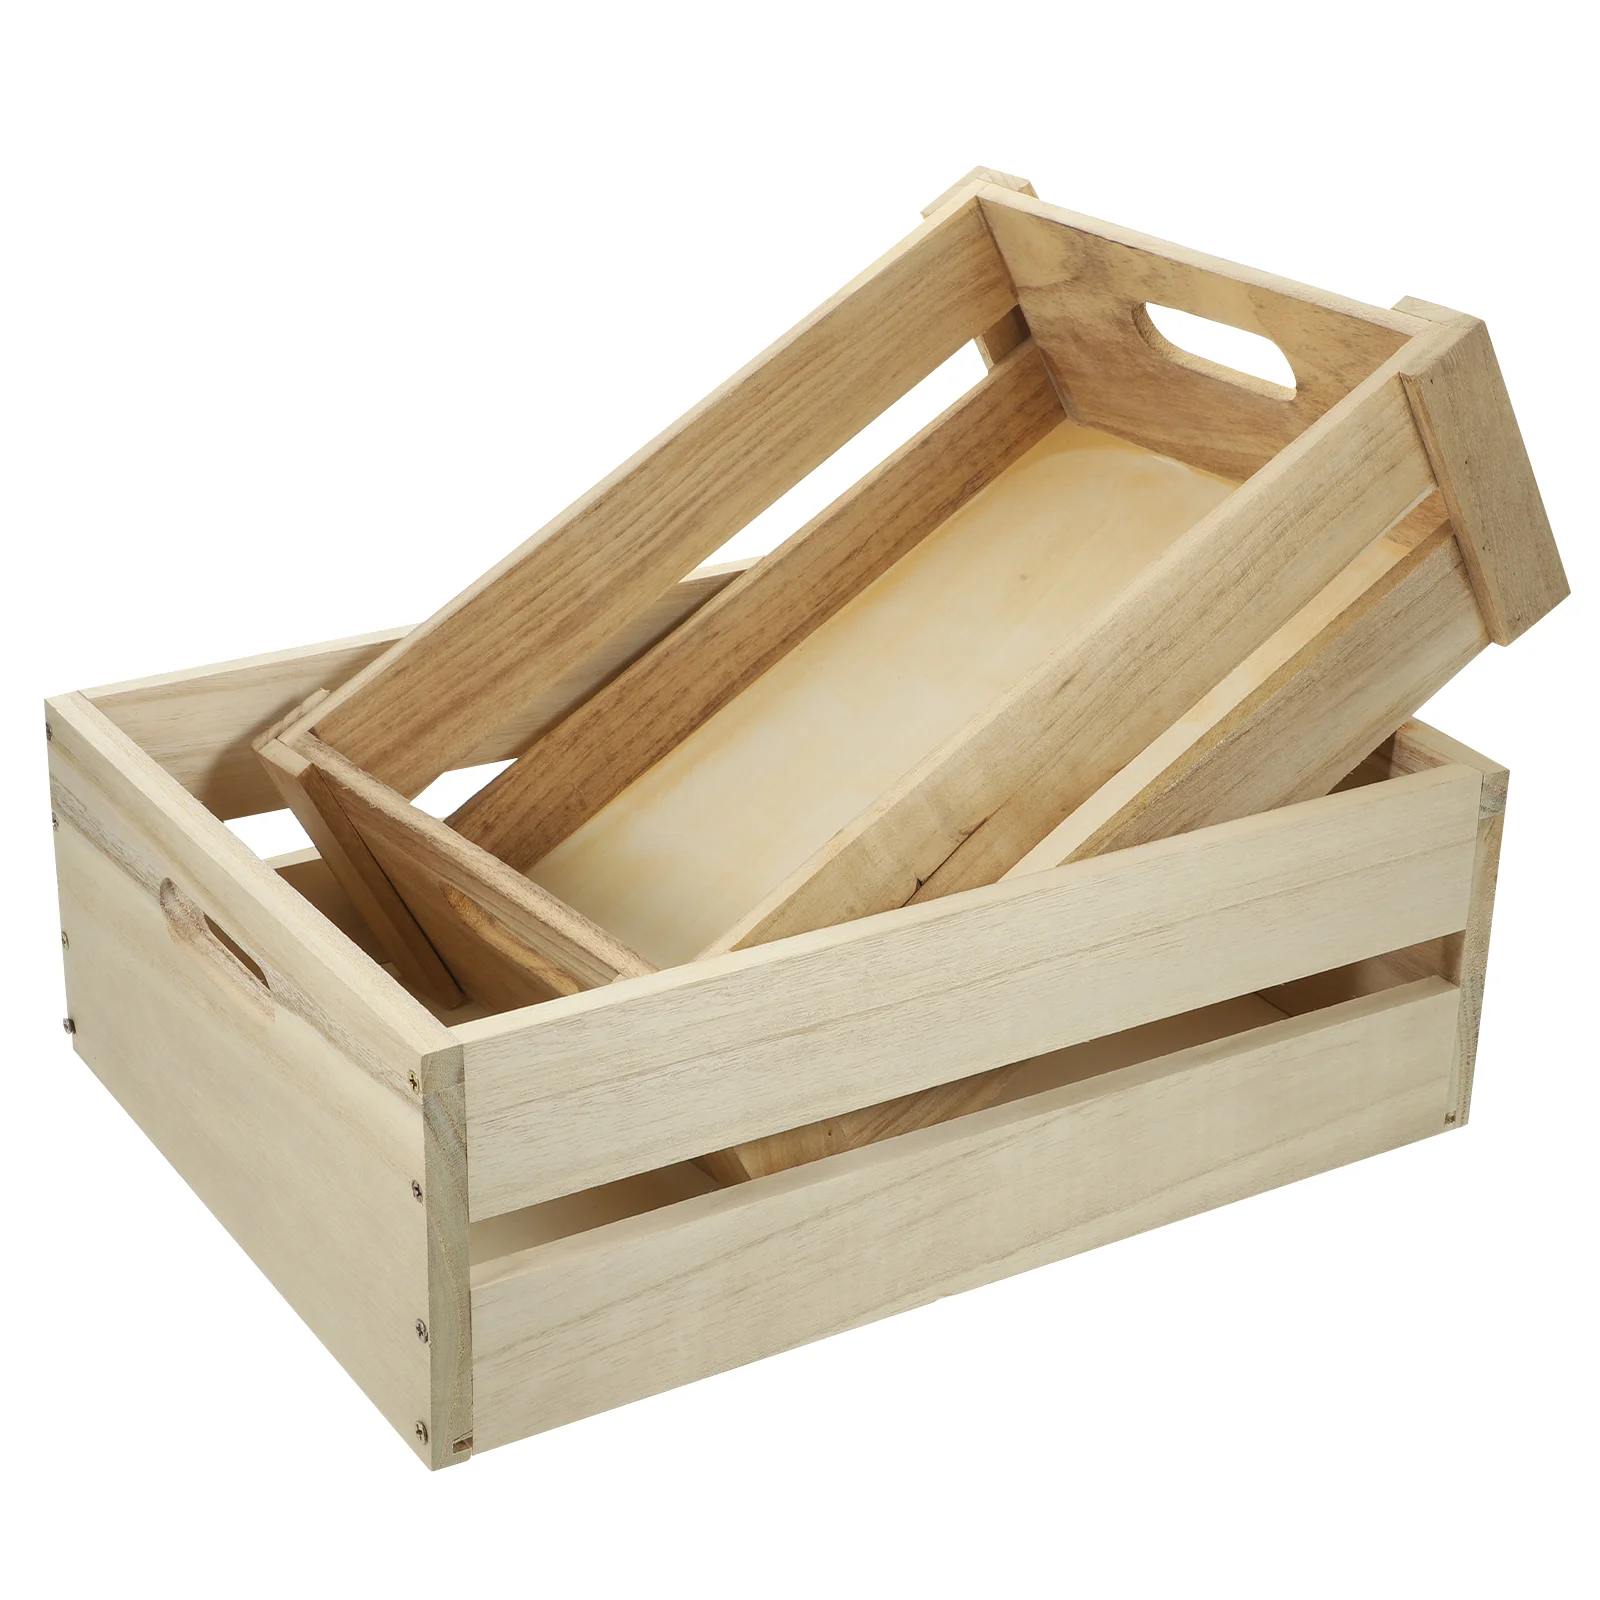 Фермерская Деревянная корзина Для организации дома, Декоративный ящик, Настольный Шкаф для хранения овощей 2